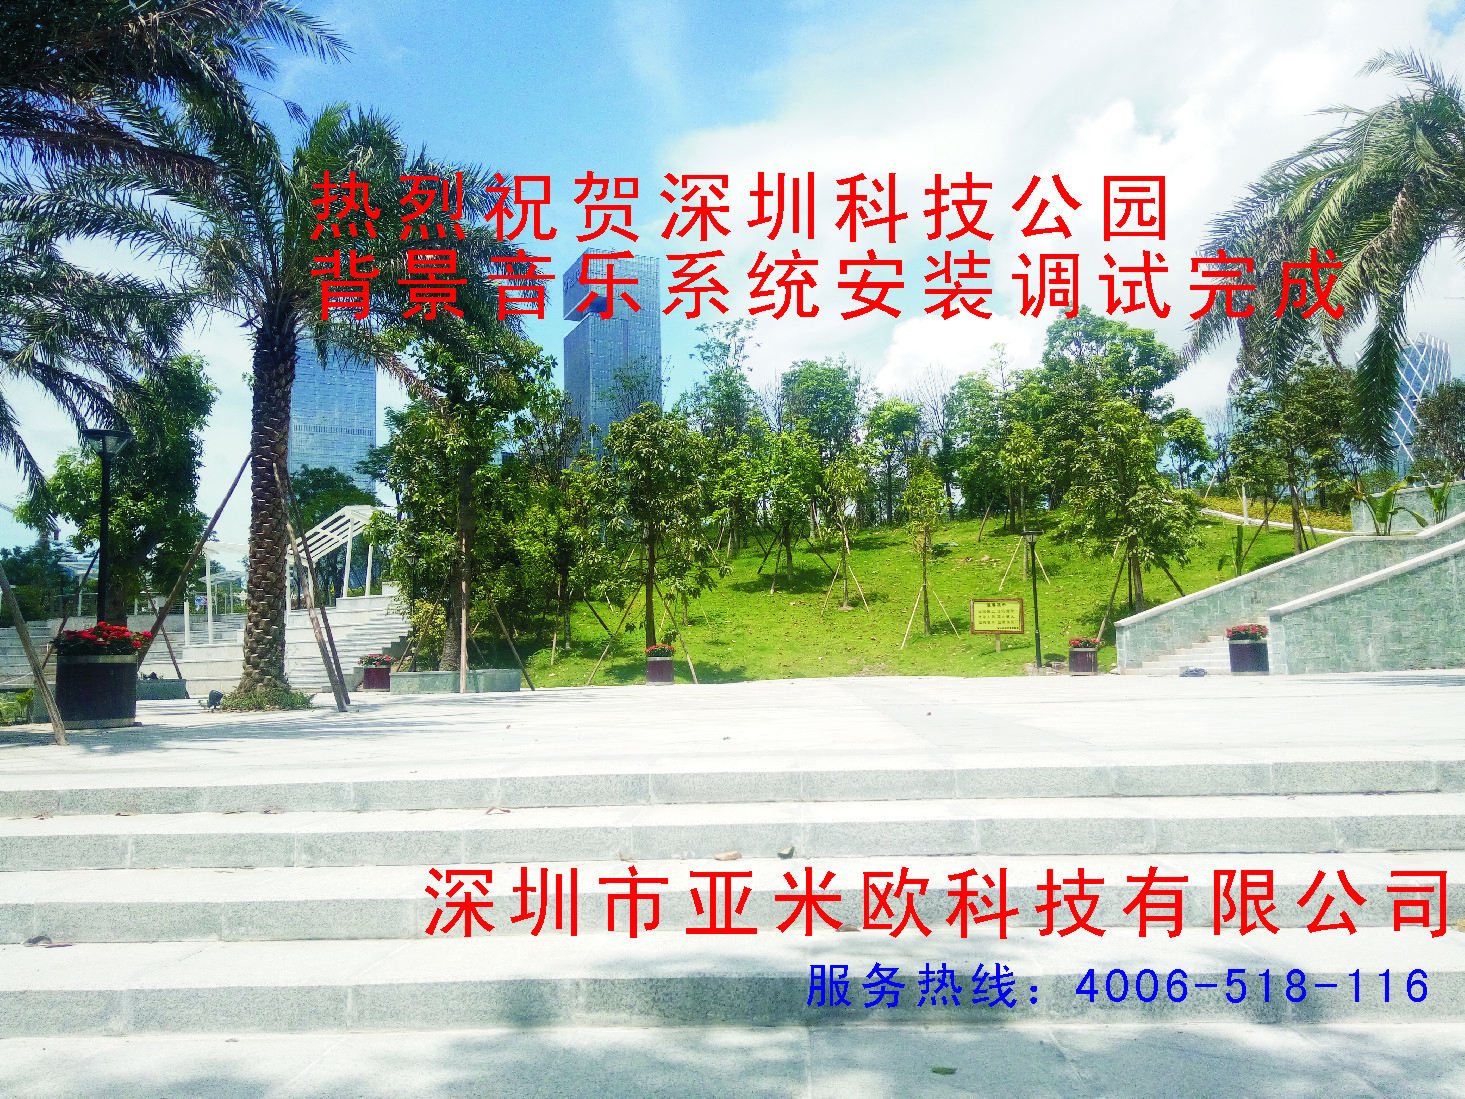 热烈祝贺深圳市科技公园背景音乐安装调试完成